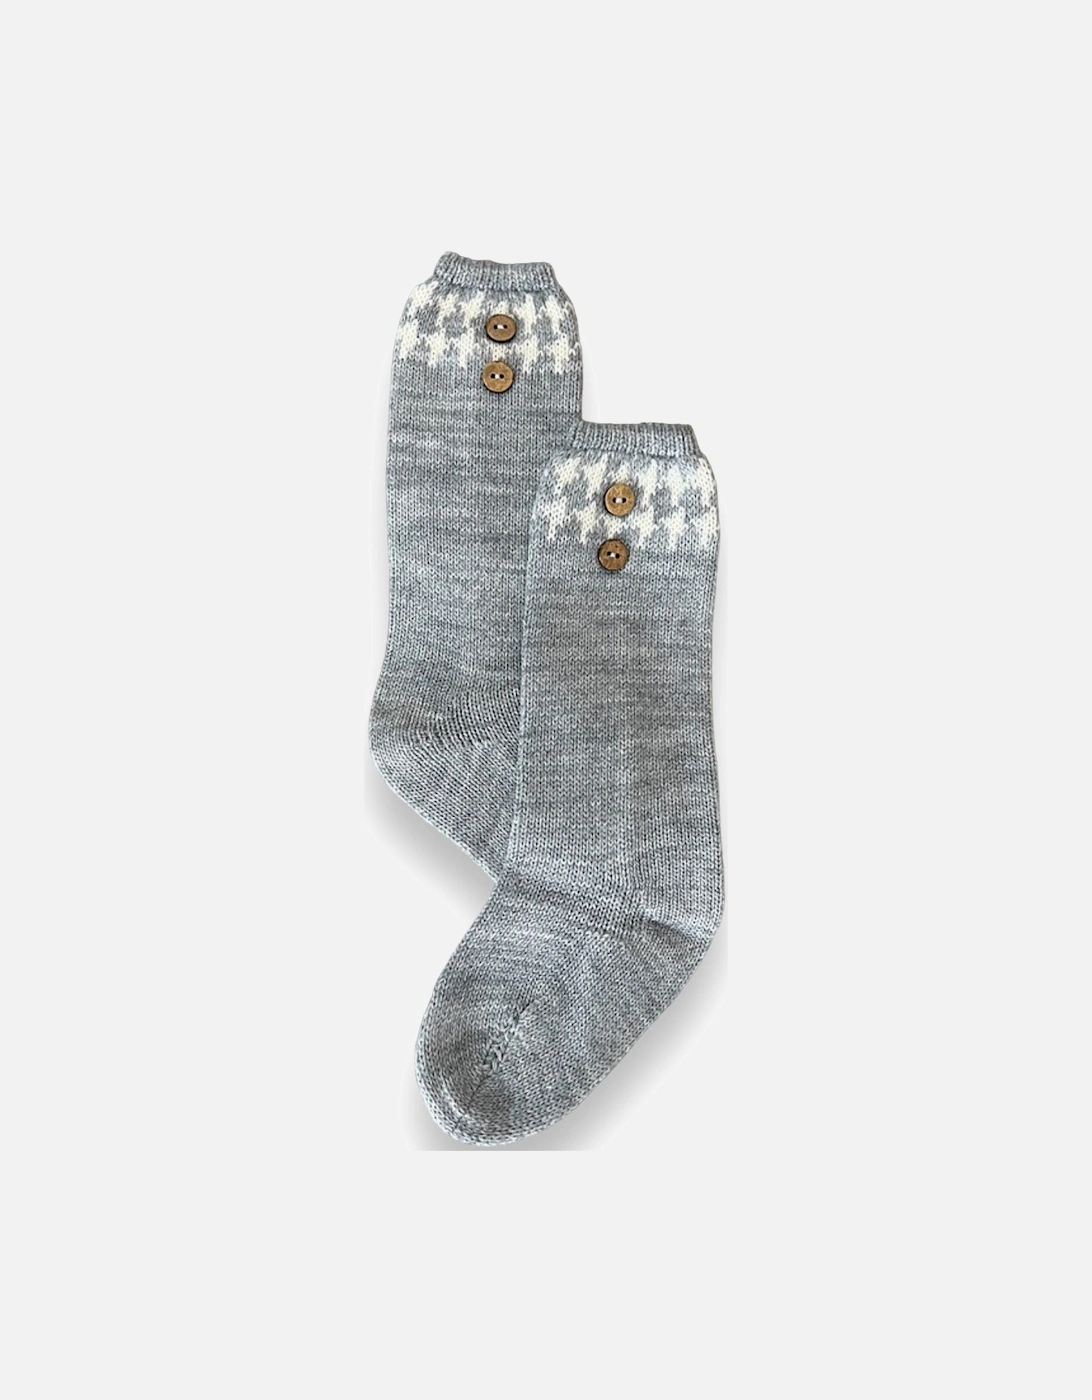 Grey Knee Socks, 2 of 1